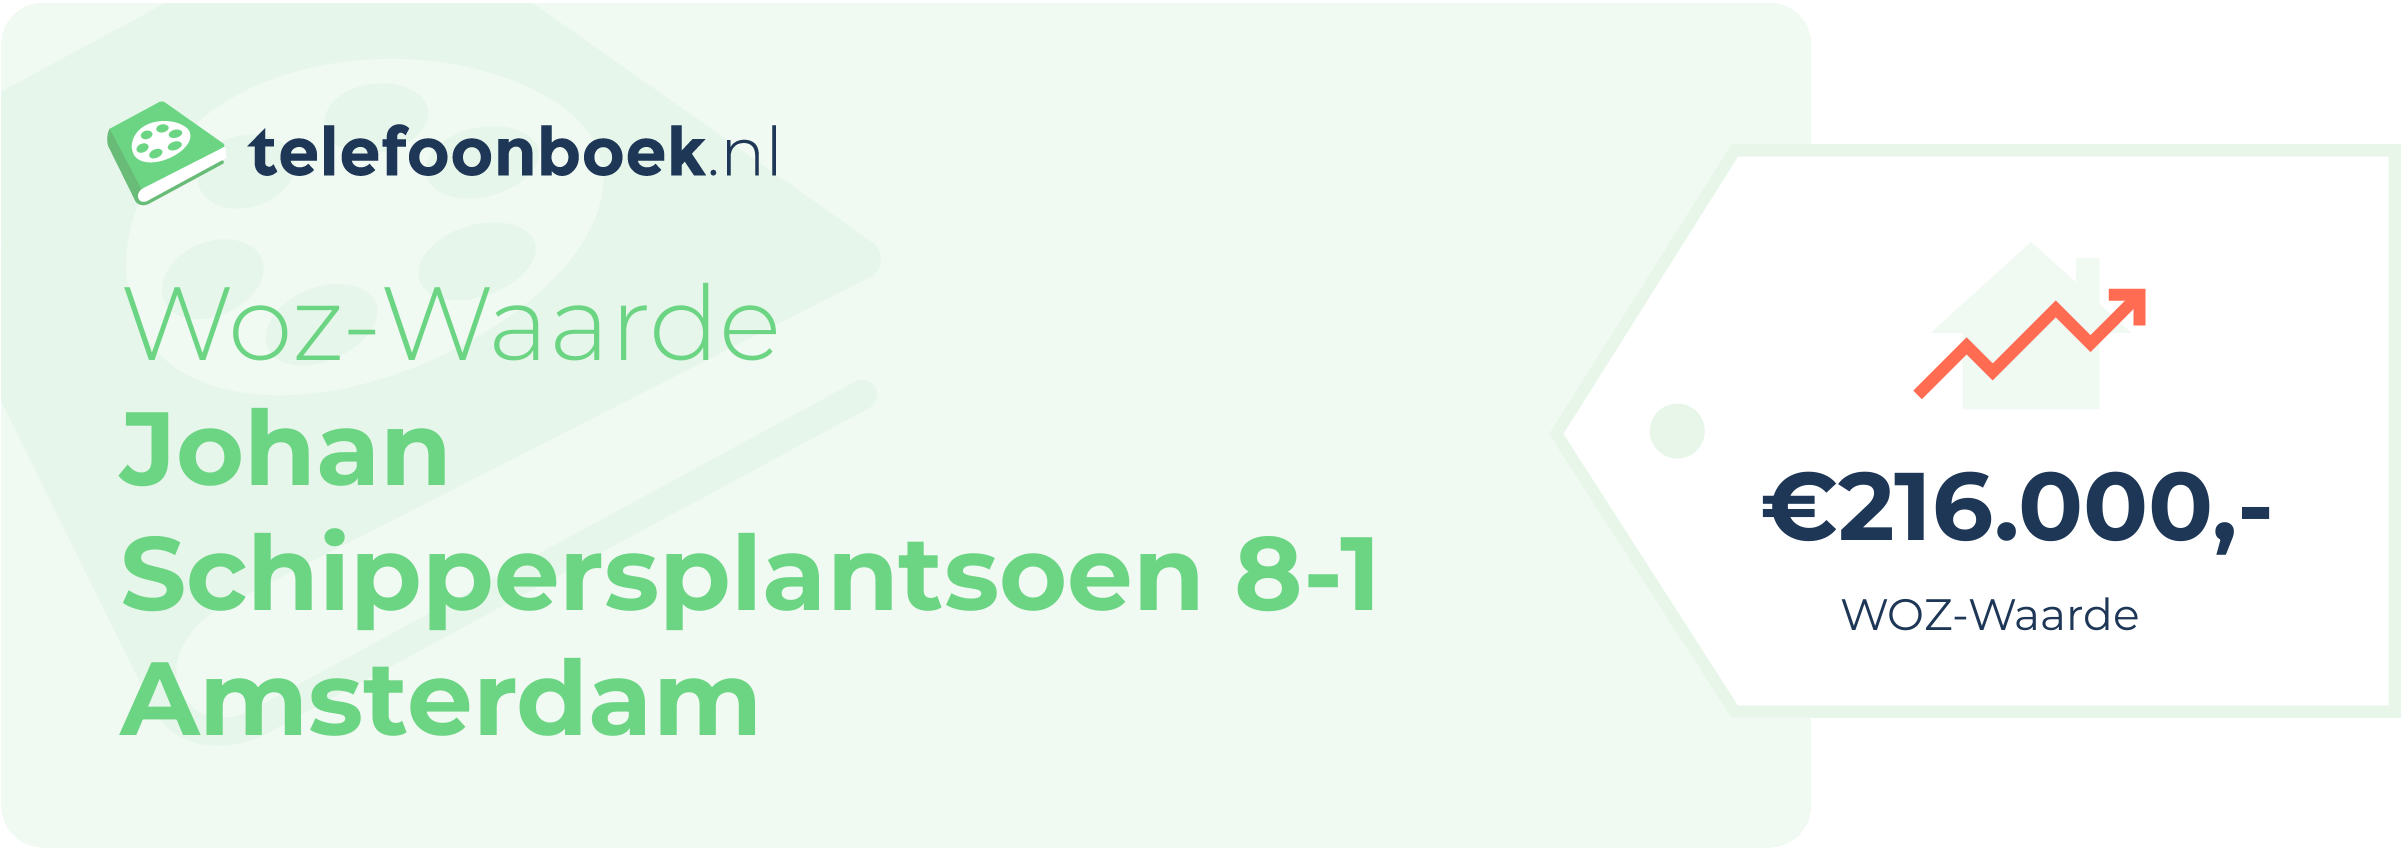 WOZ-waarde Johan Schippersplantsoen 8-1 Amsterdam